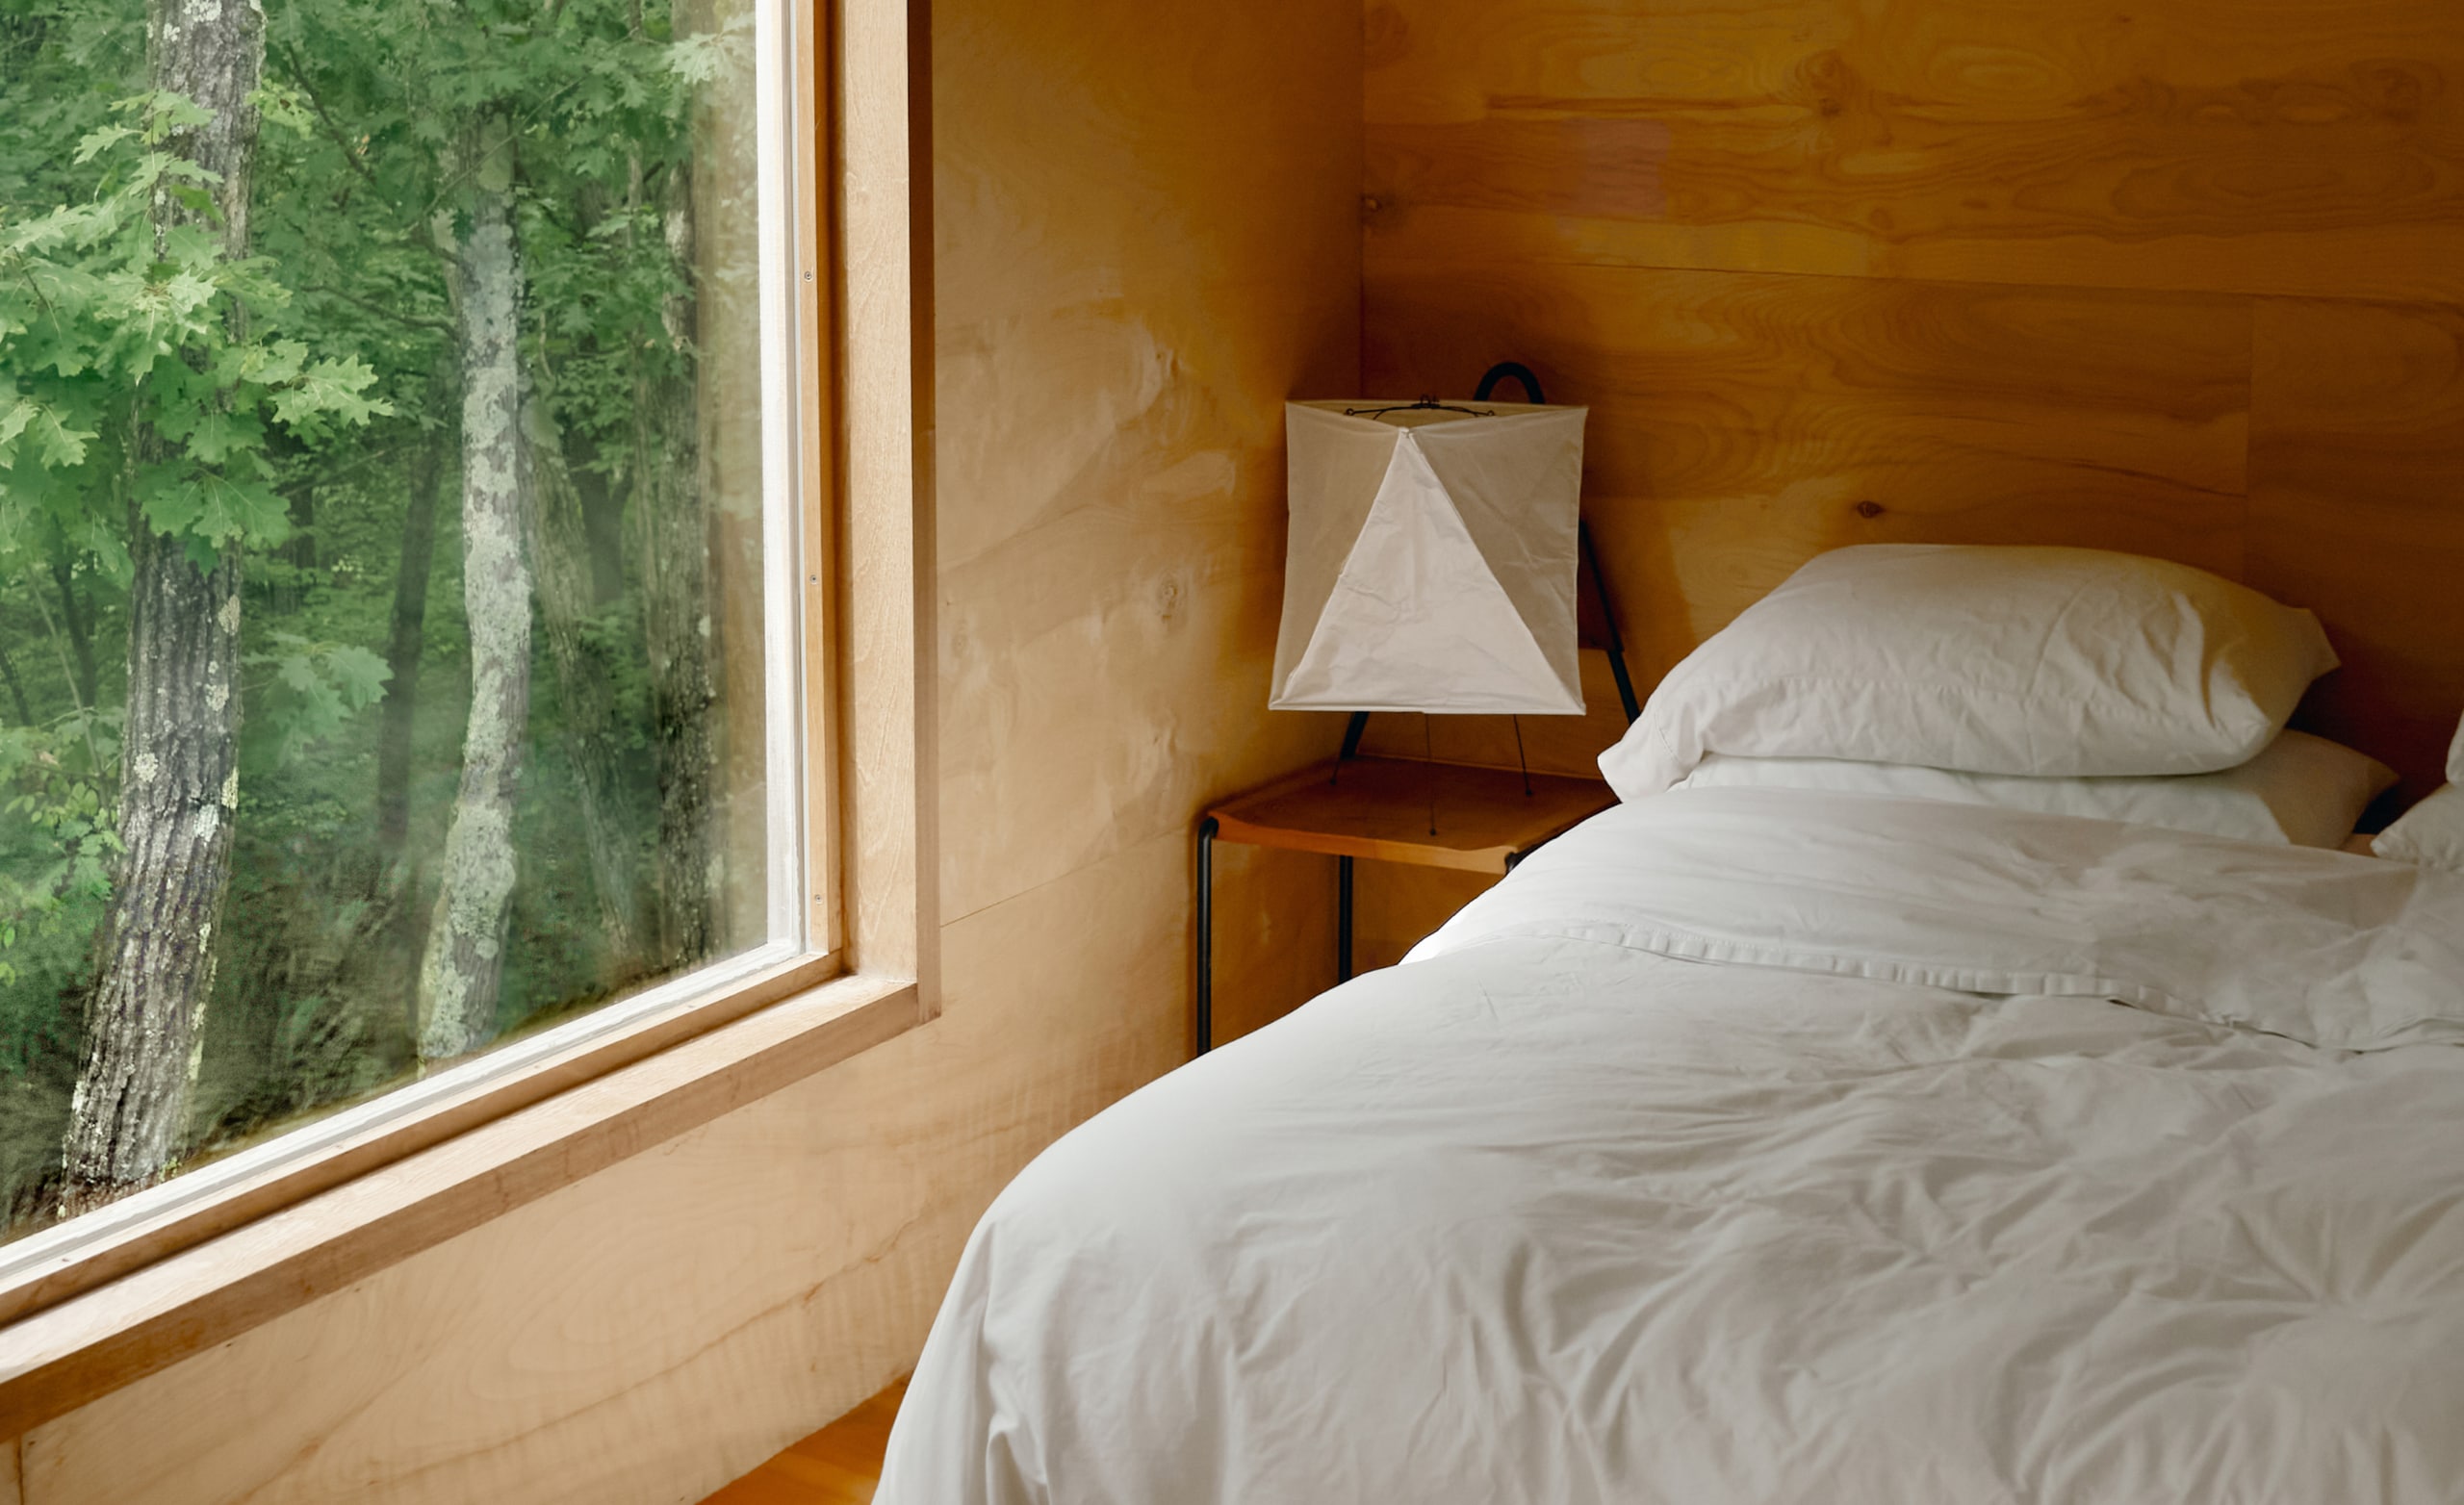 Kamar tidur dengan seprai putih di tempat tidur yang baru dirapikan, dan jendela besar yang menunjukkan pepohonan di luar.